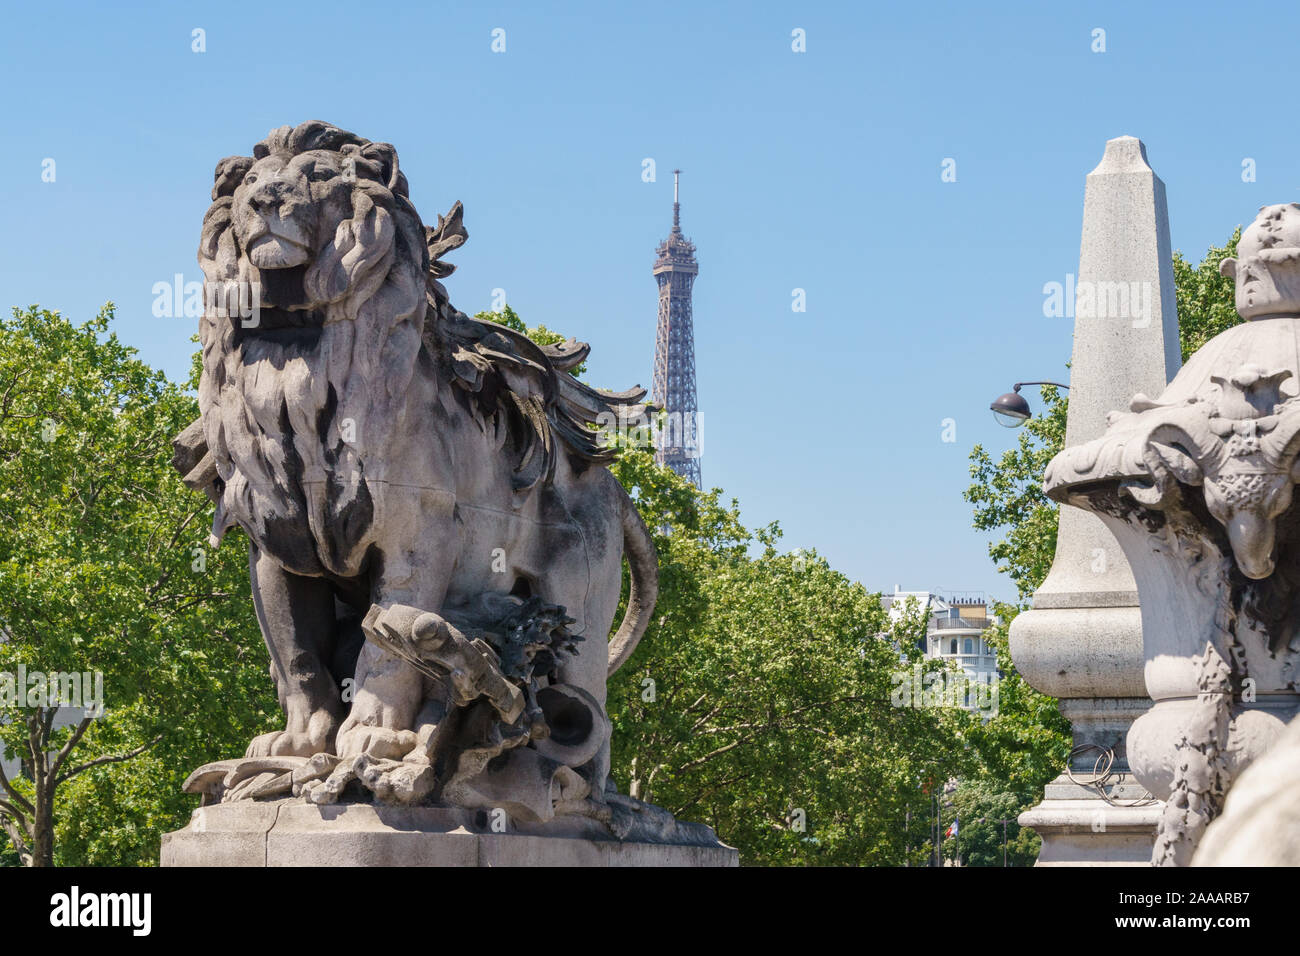 Detalle de la escultura de un león en la entrada del puente Alexandre III, en París, Francia Foto de stock